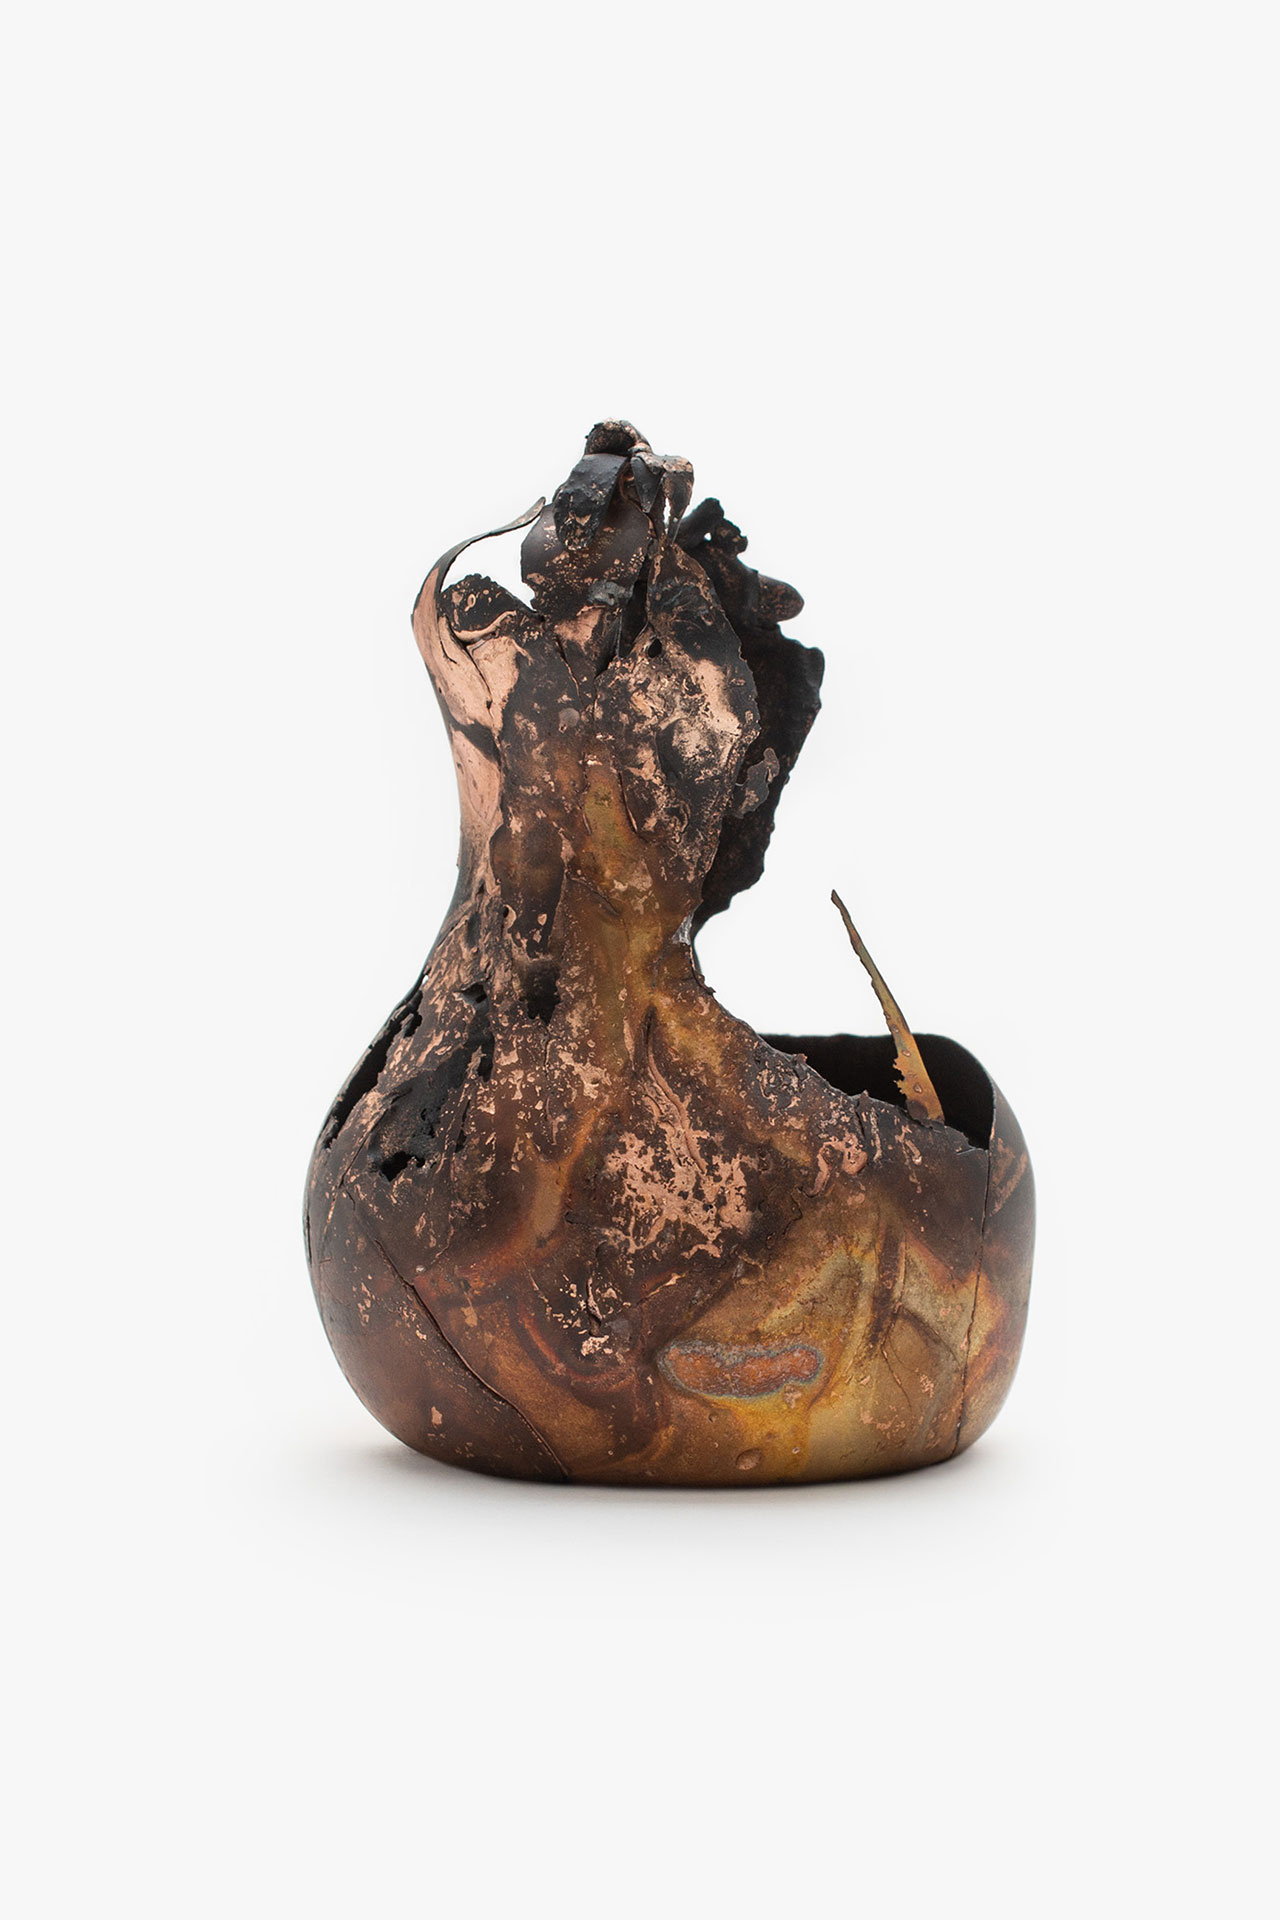 Omer Arbel, OAO113.2020.15, 2020.
15,4 x 11 x 10,5 cm.
Copper alloy cast in glass.
Courtesy Carwan gallery.